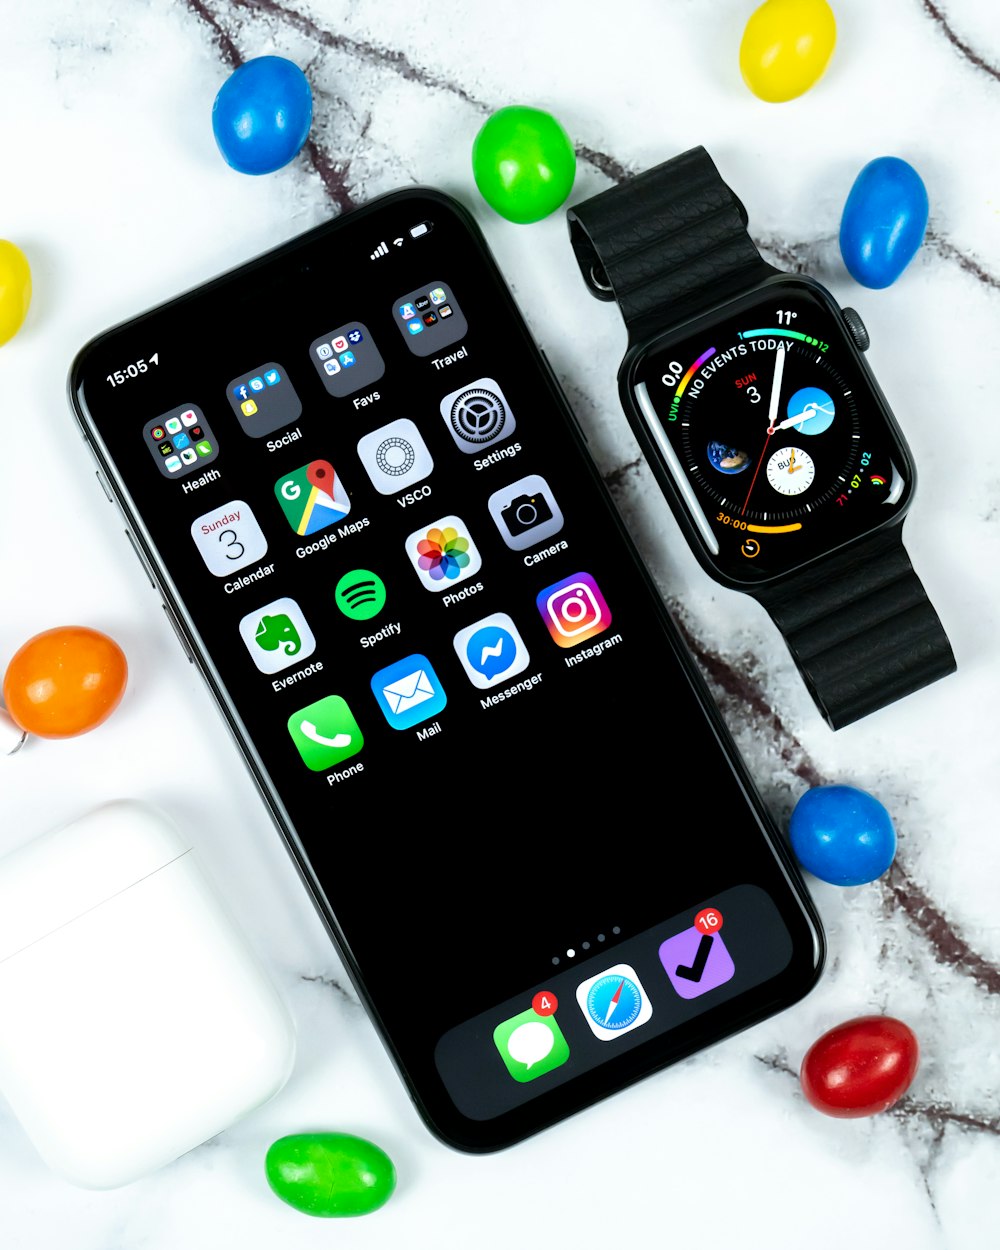 Apple watch beside iPhone